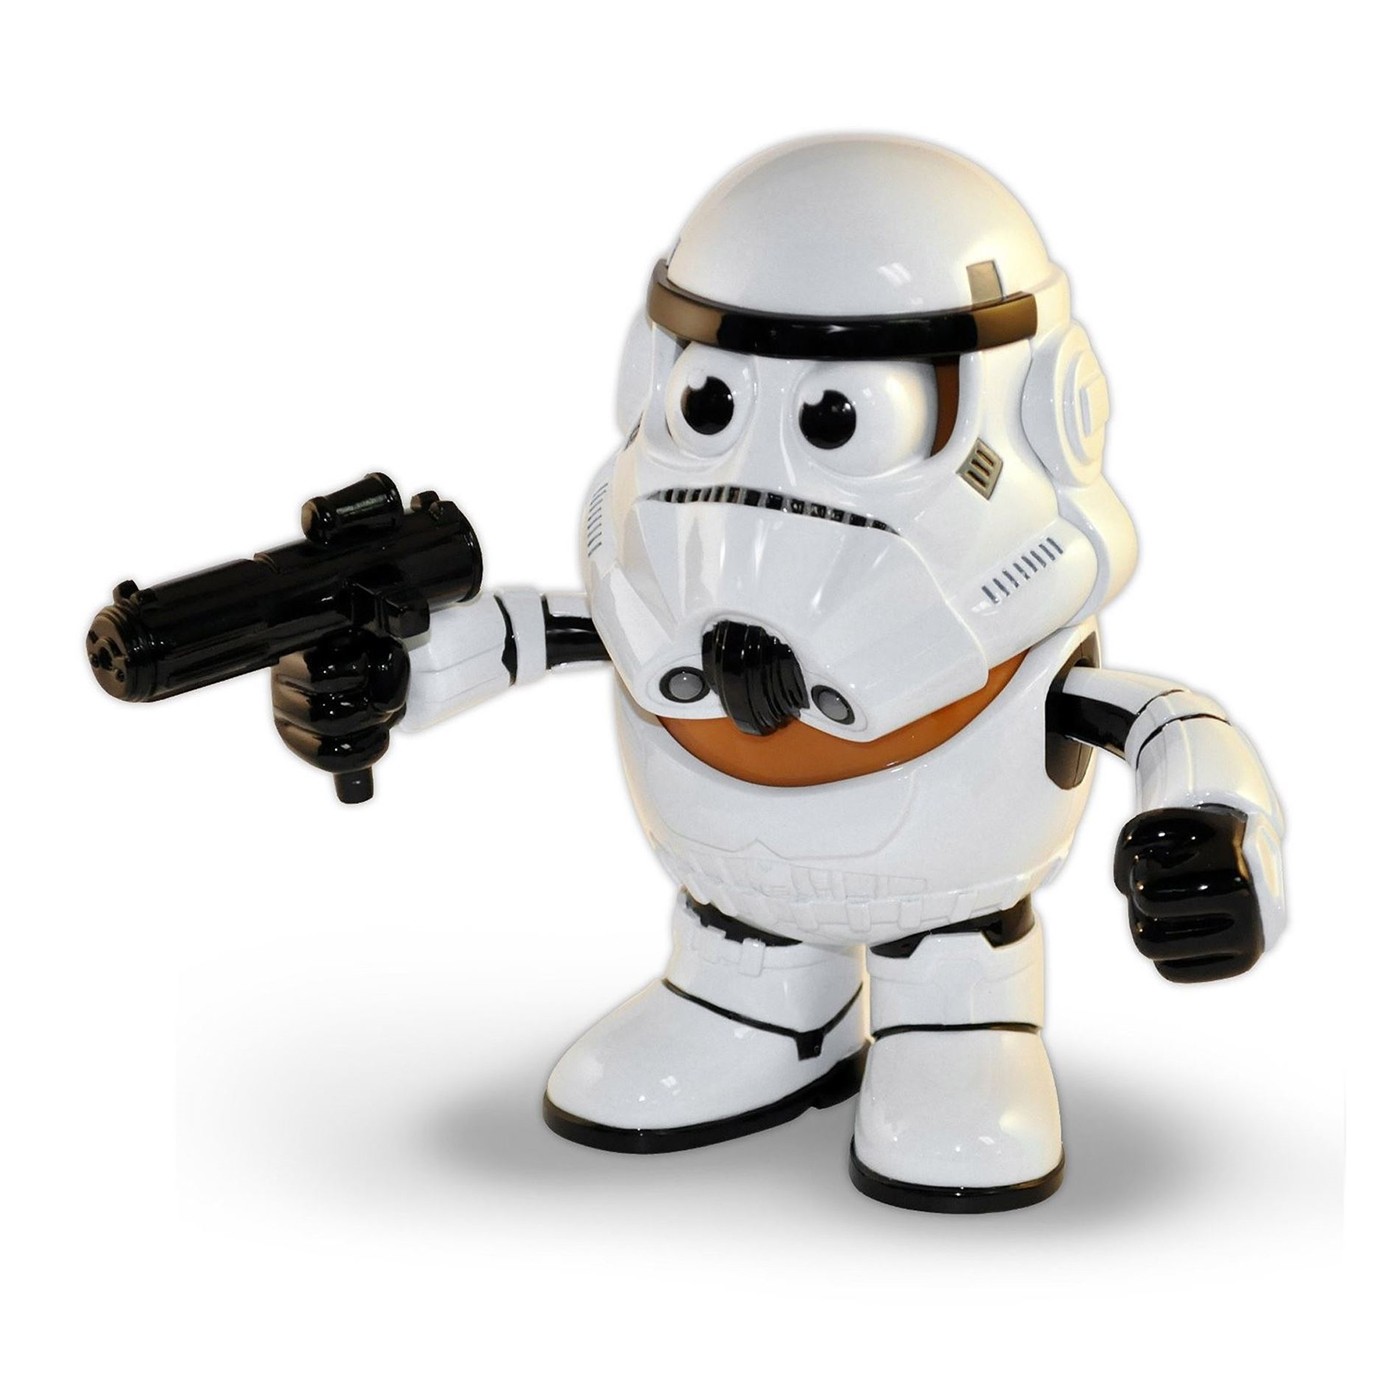 Star Wars Stormtrooper Mr. Potato Head